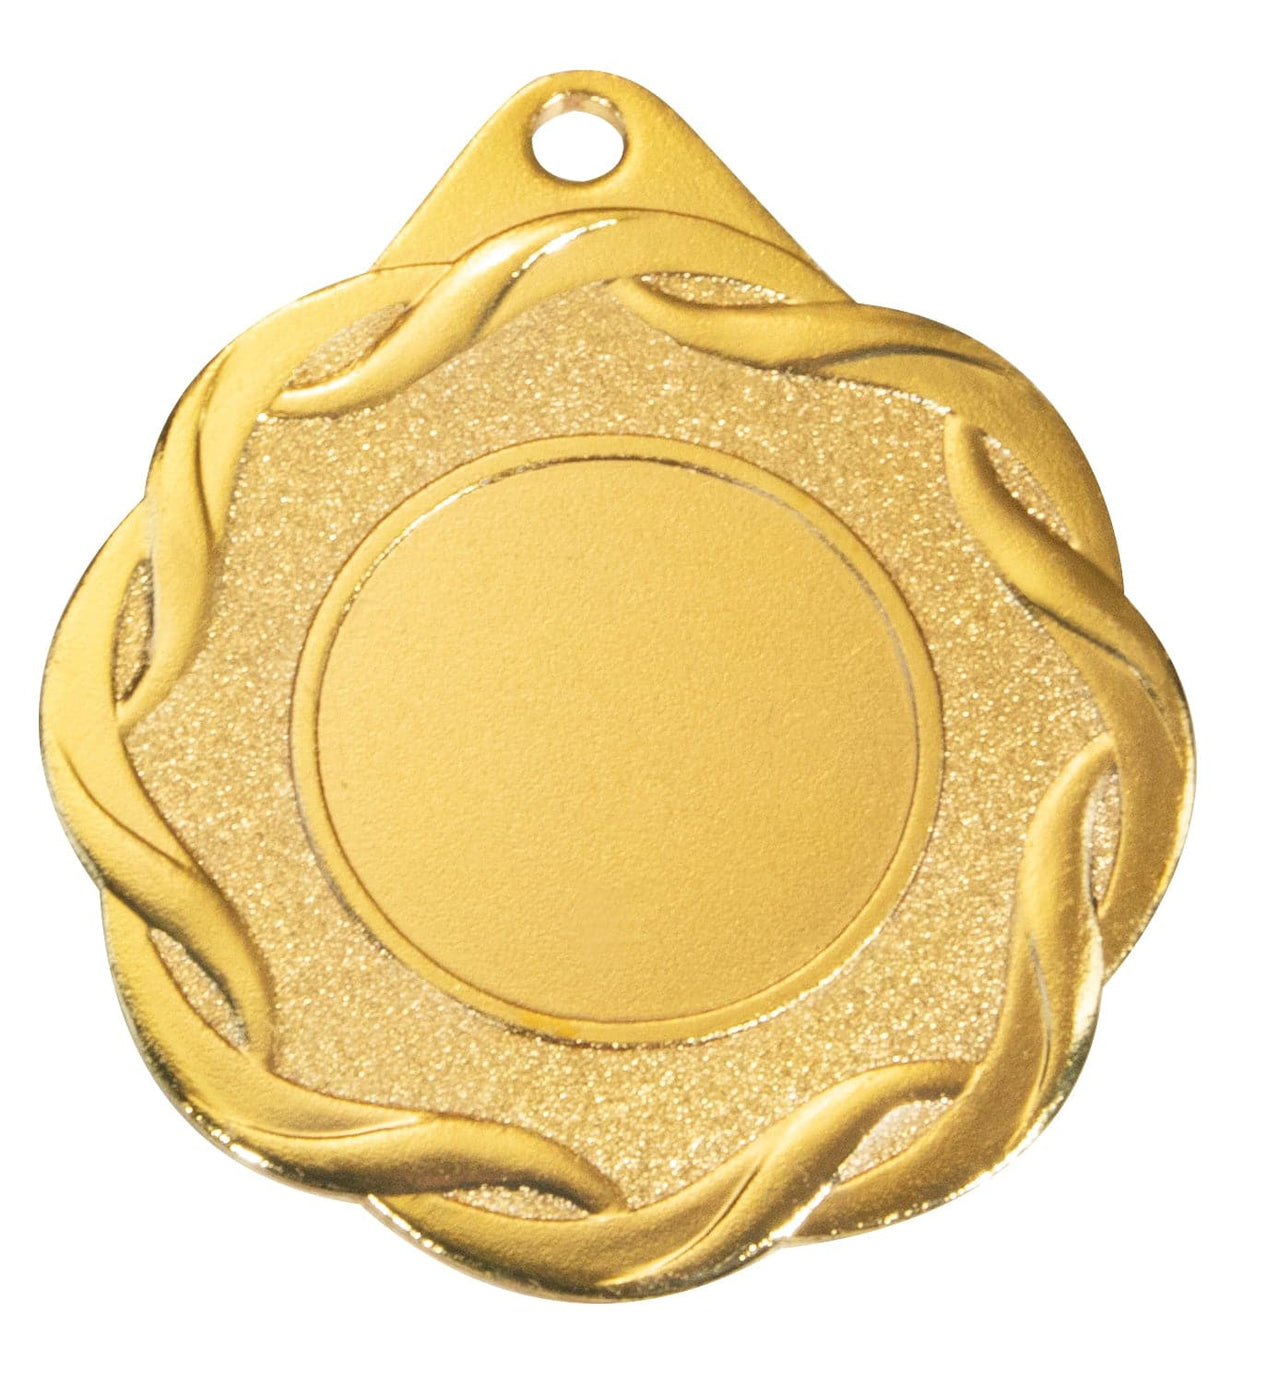 Goldmedaille Auszeichnung mit leerer Mitte auf weißem Hintergrund.
Produkt: POMEKI Medaillen Jena 50 mm PK79336g-E25